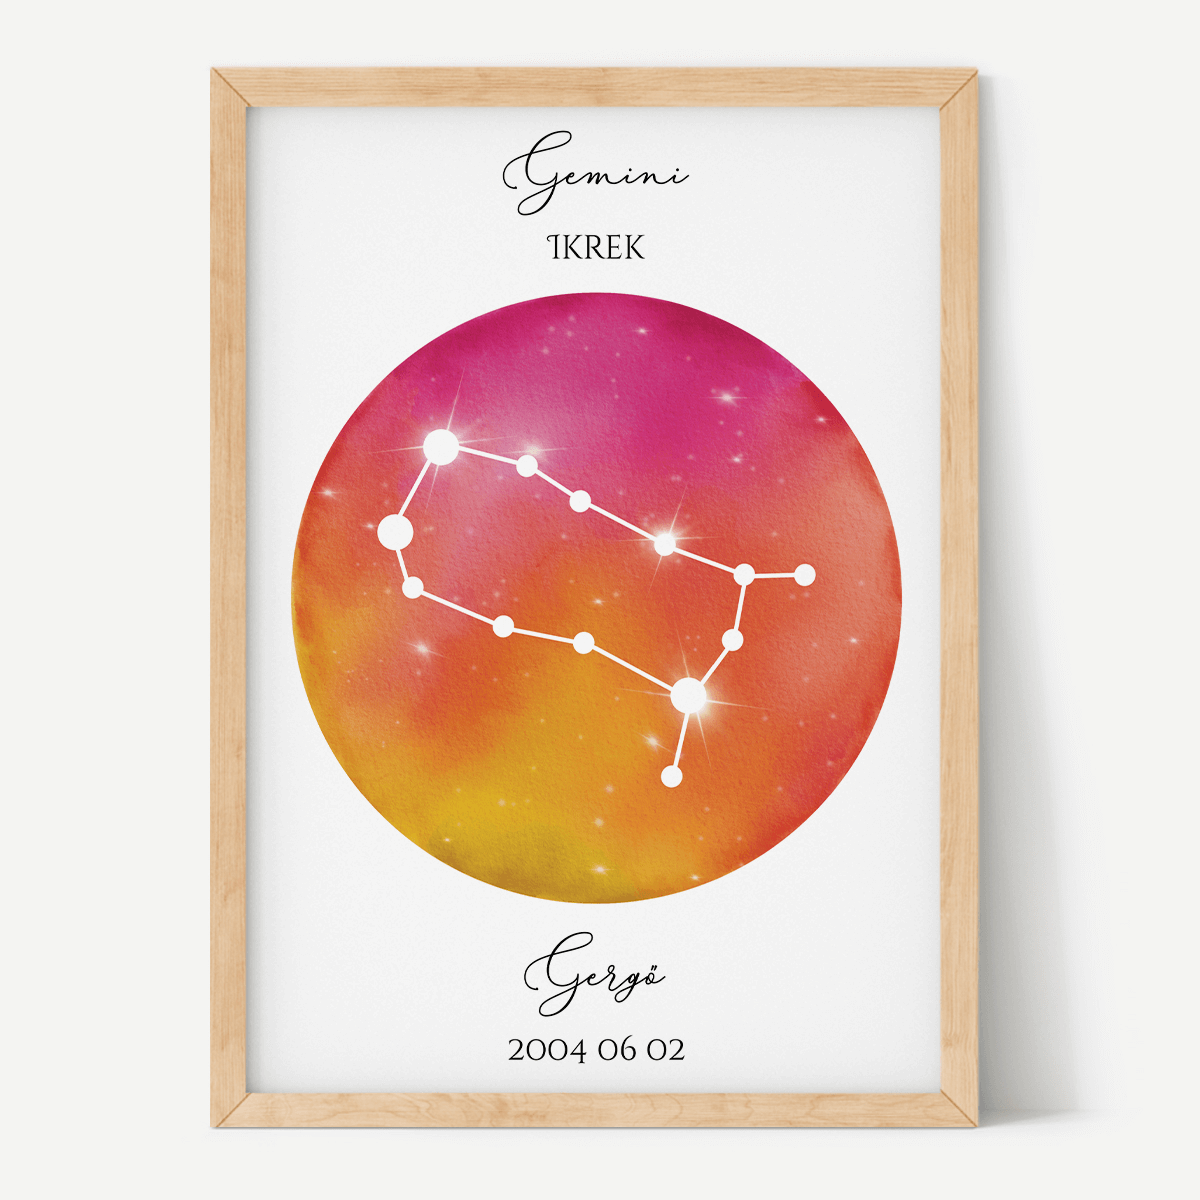 Vörös-Narancs Égbolt - Személyre szabott csillagjegyes poszter - Választható csillagjegy